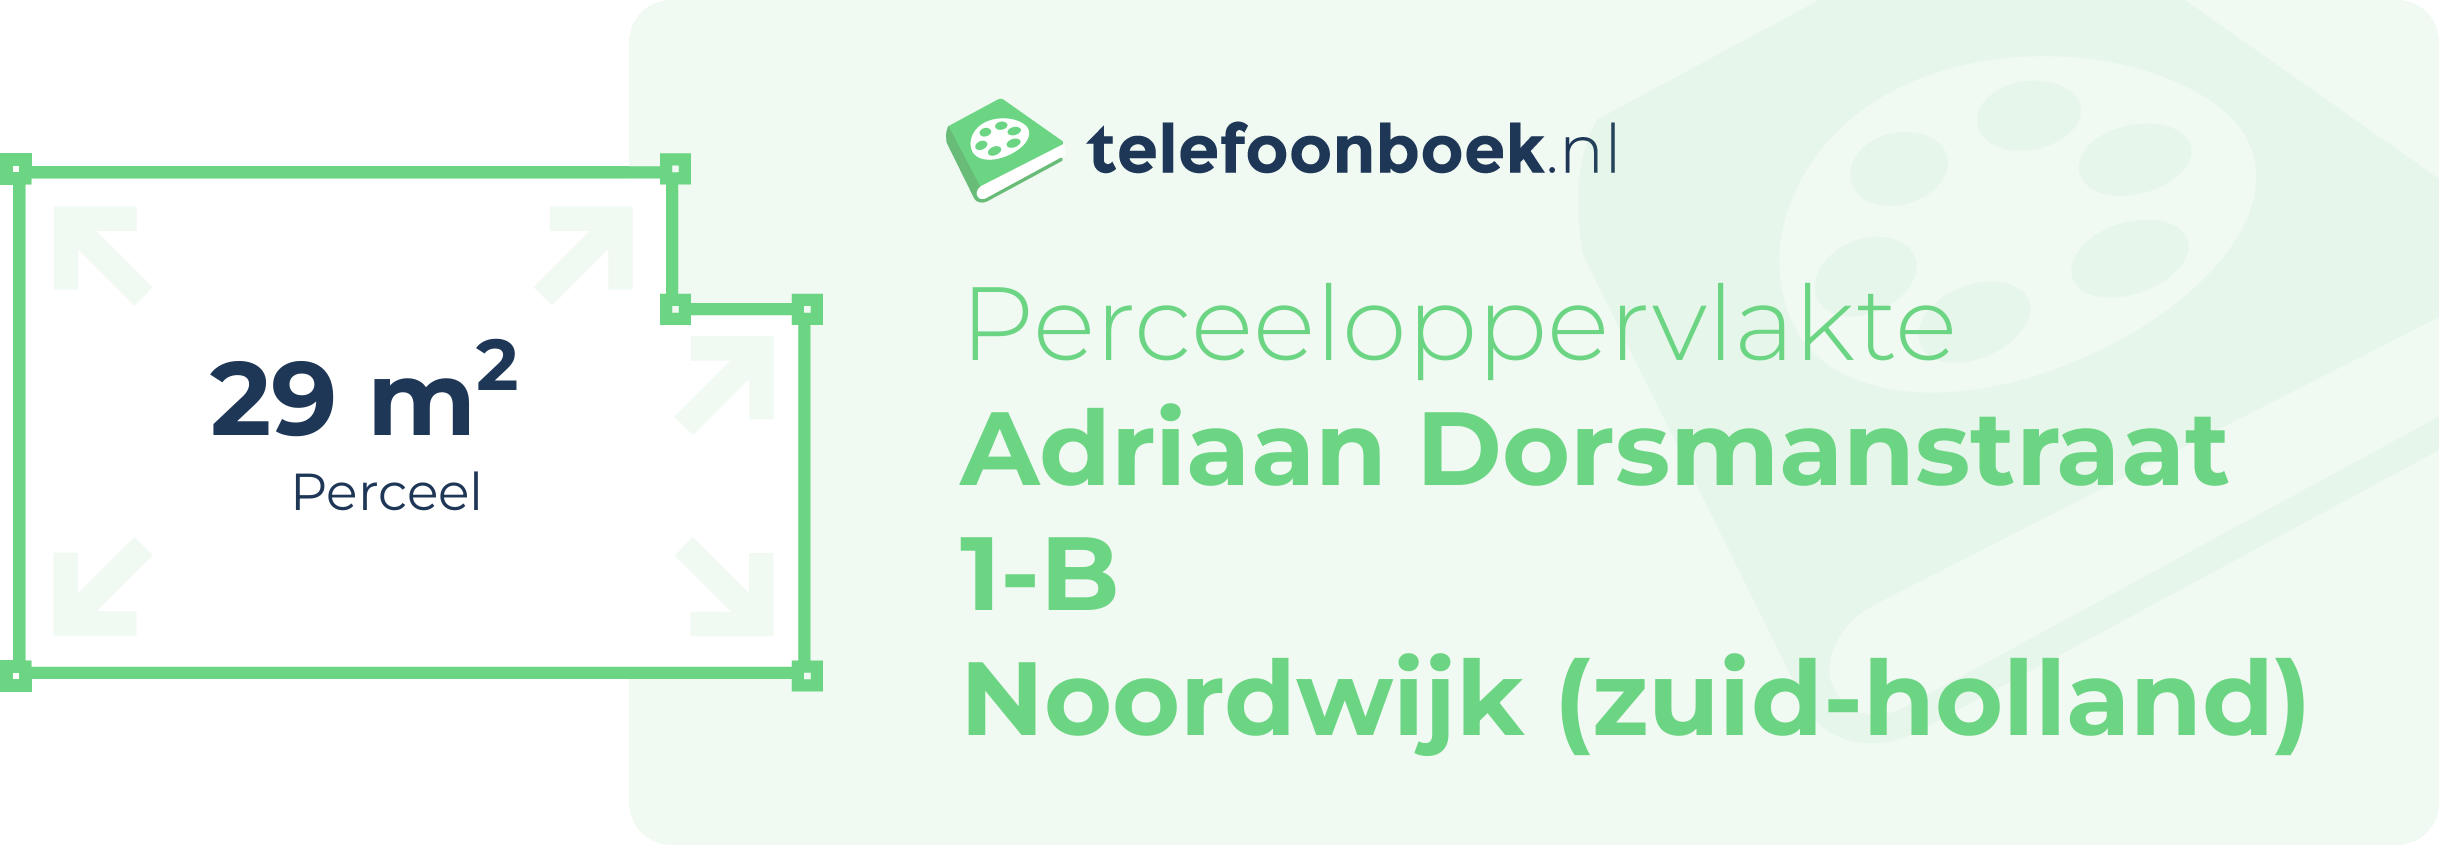 Perceeloppervlakte Adriaan Dorsmanstraat 1-B Noordwijk (Zuid-Holland)